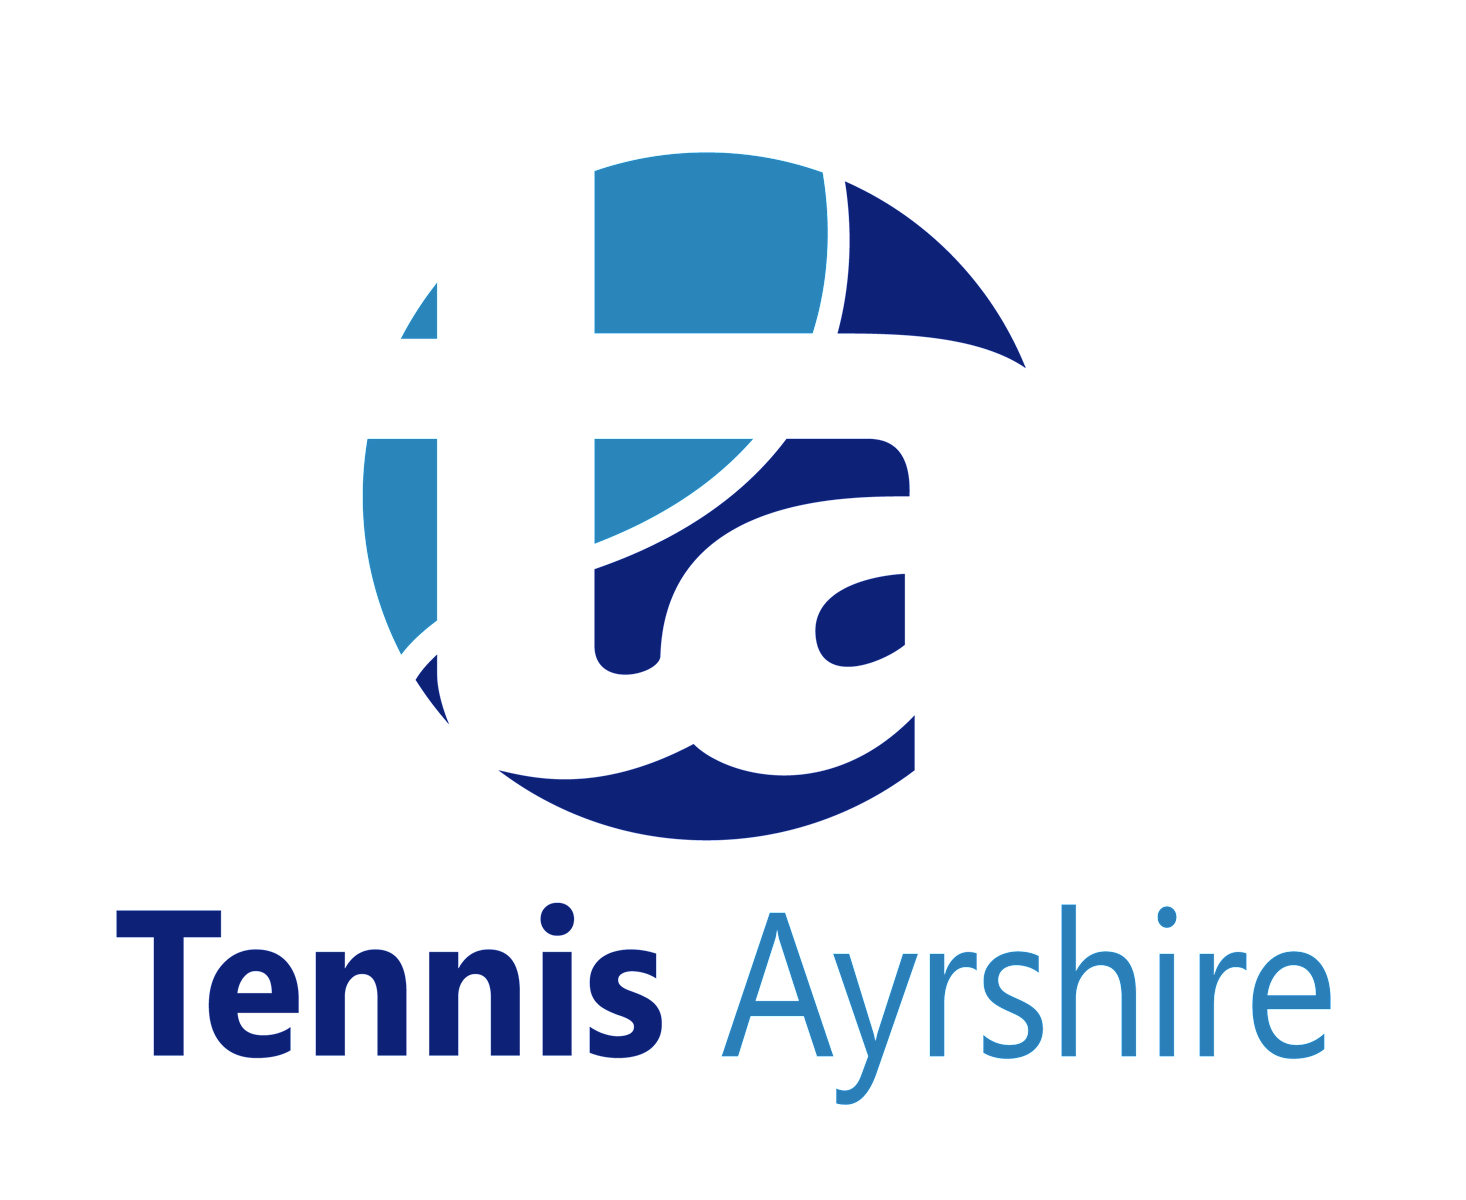 Tennis Ayrshire